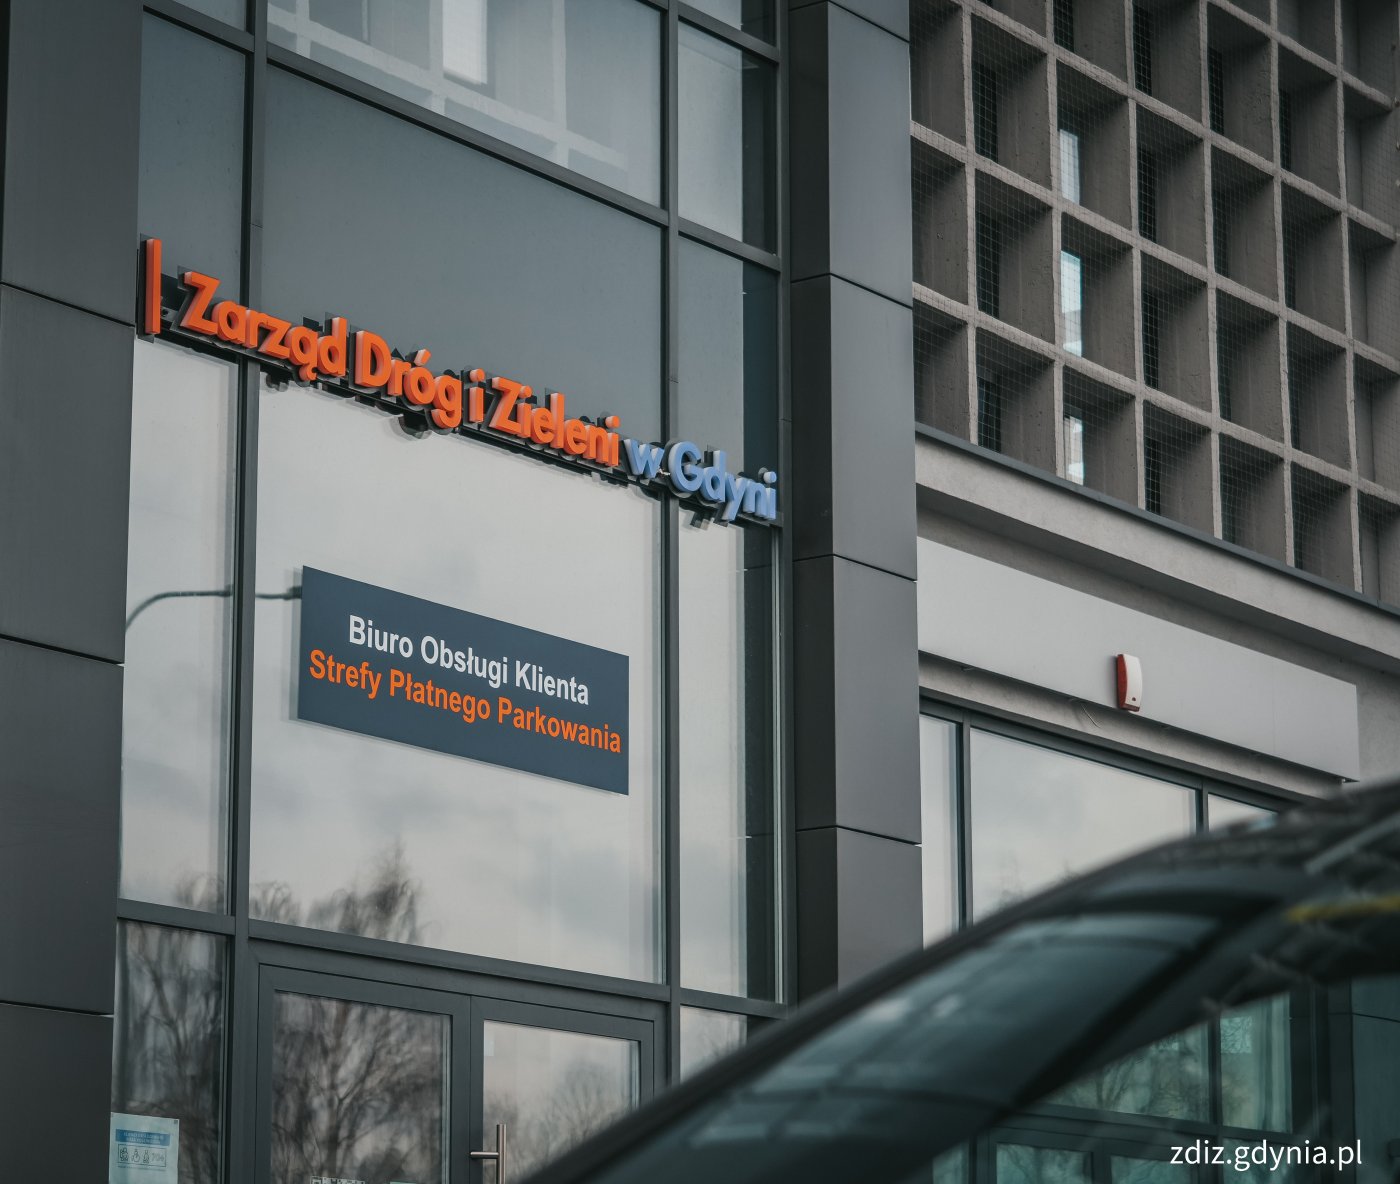 widoczny budynek z napisem Zarząd Dróg i Zieleni w Gdyni Biuro Obsługi Klienta Strefy Płatnego Parkowania